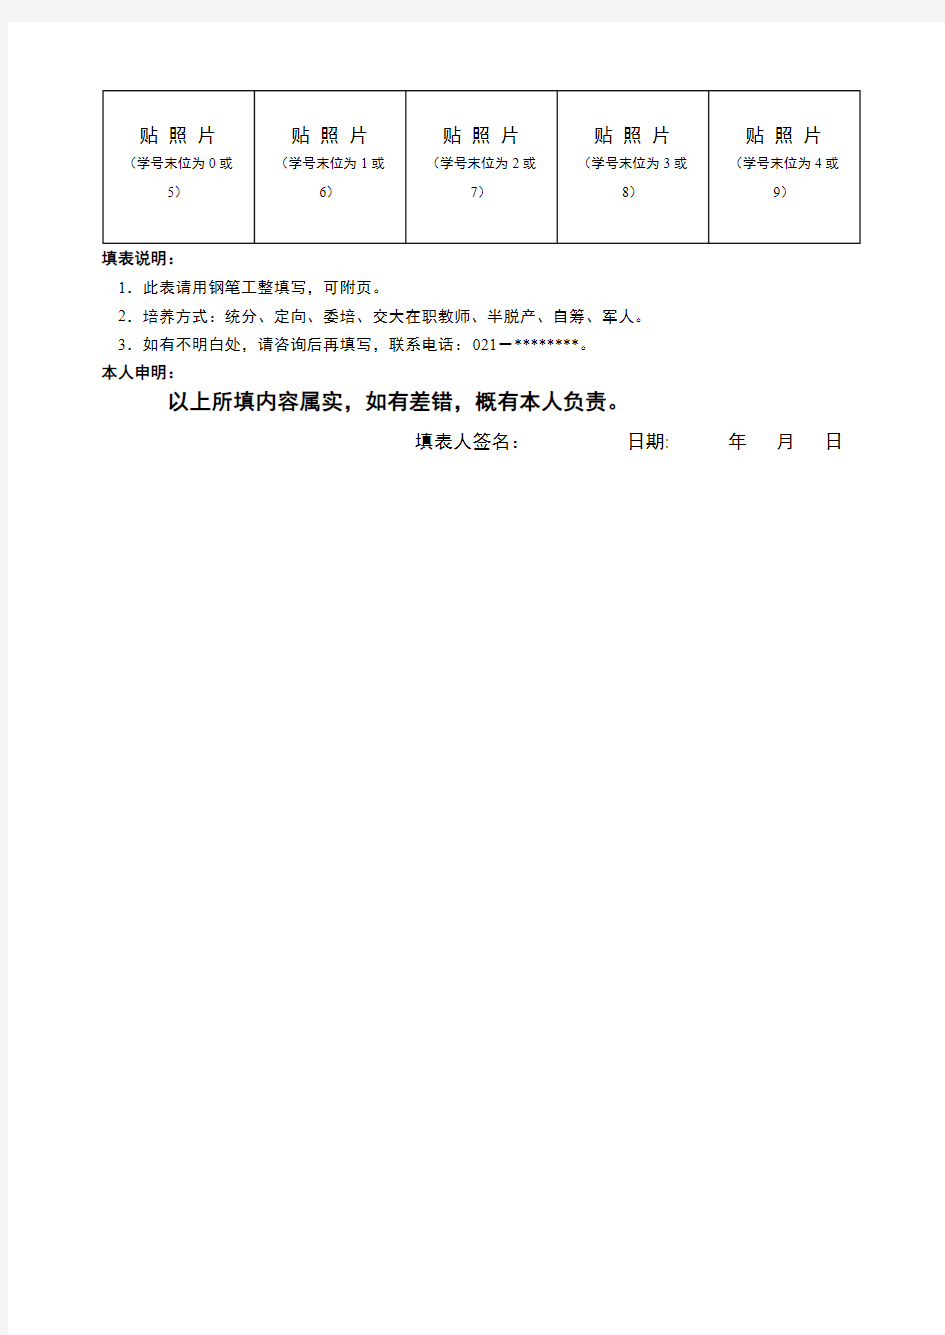 上海交通大学研究生基本信息表【模板】